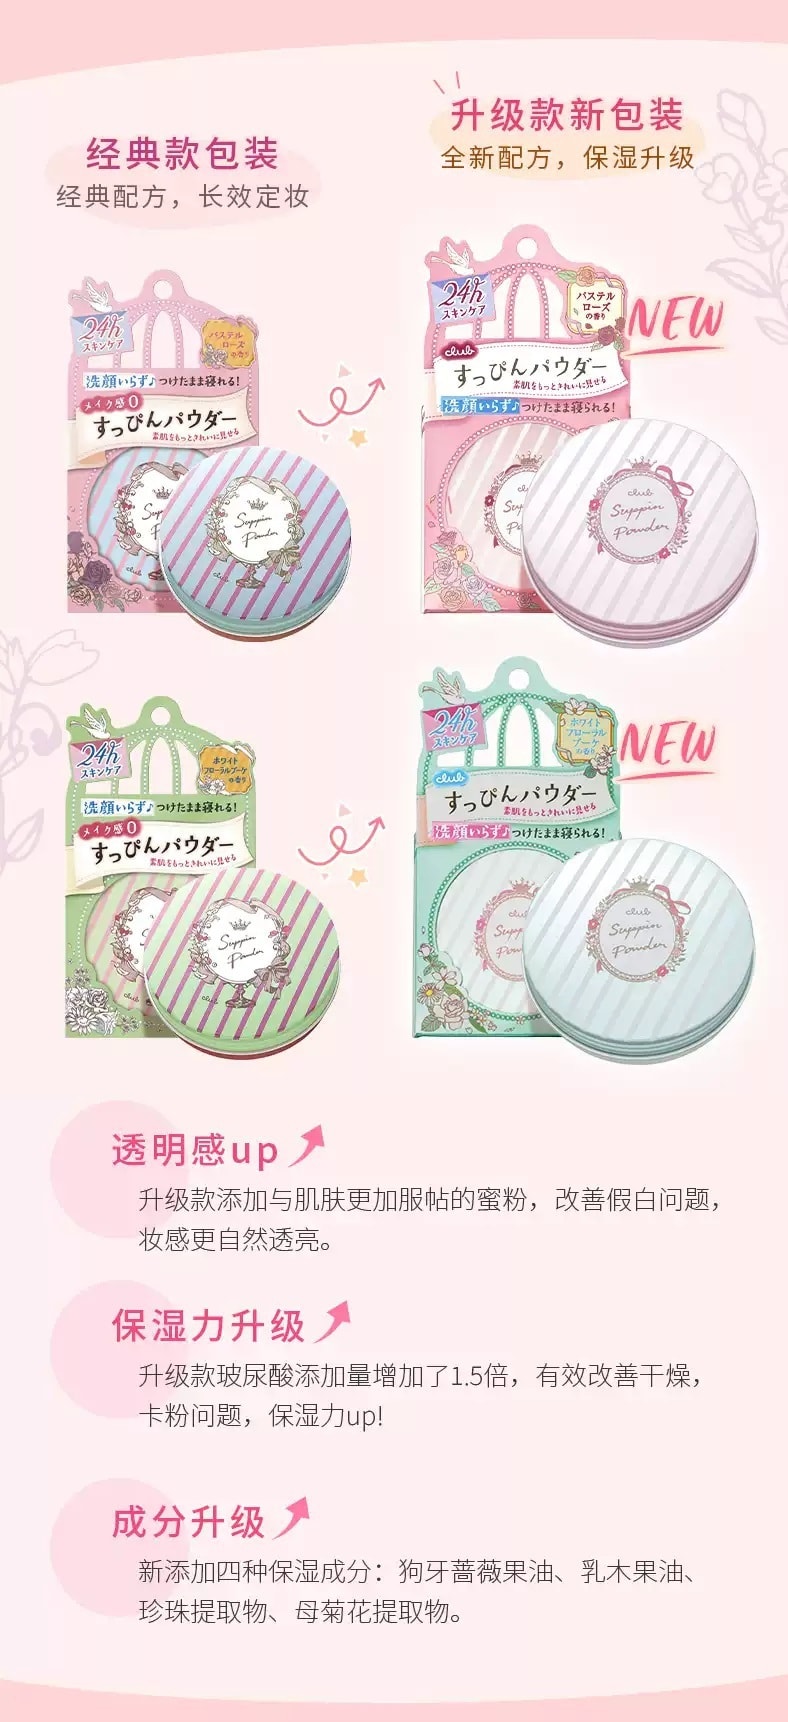 日本 CLUB 出浴素顏美肌粉餅 蘋果香 26g